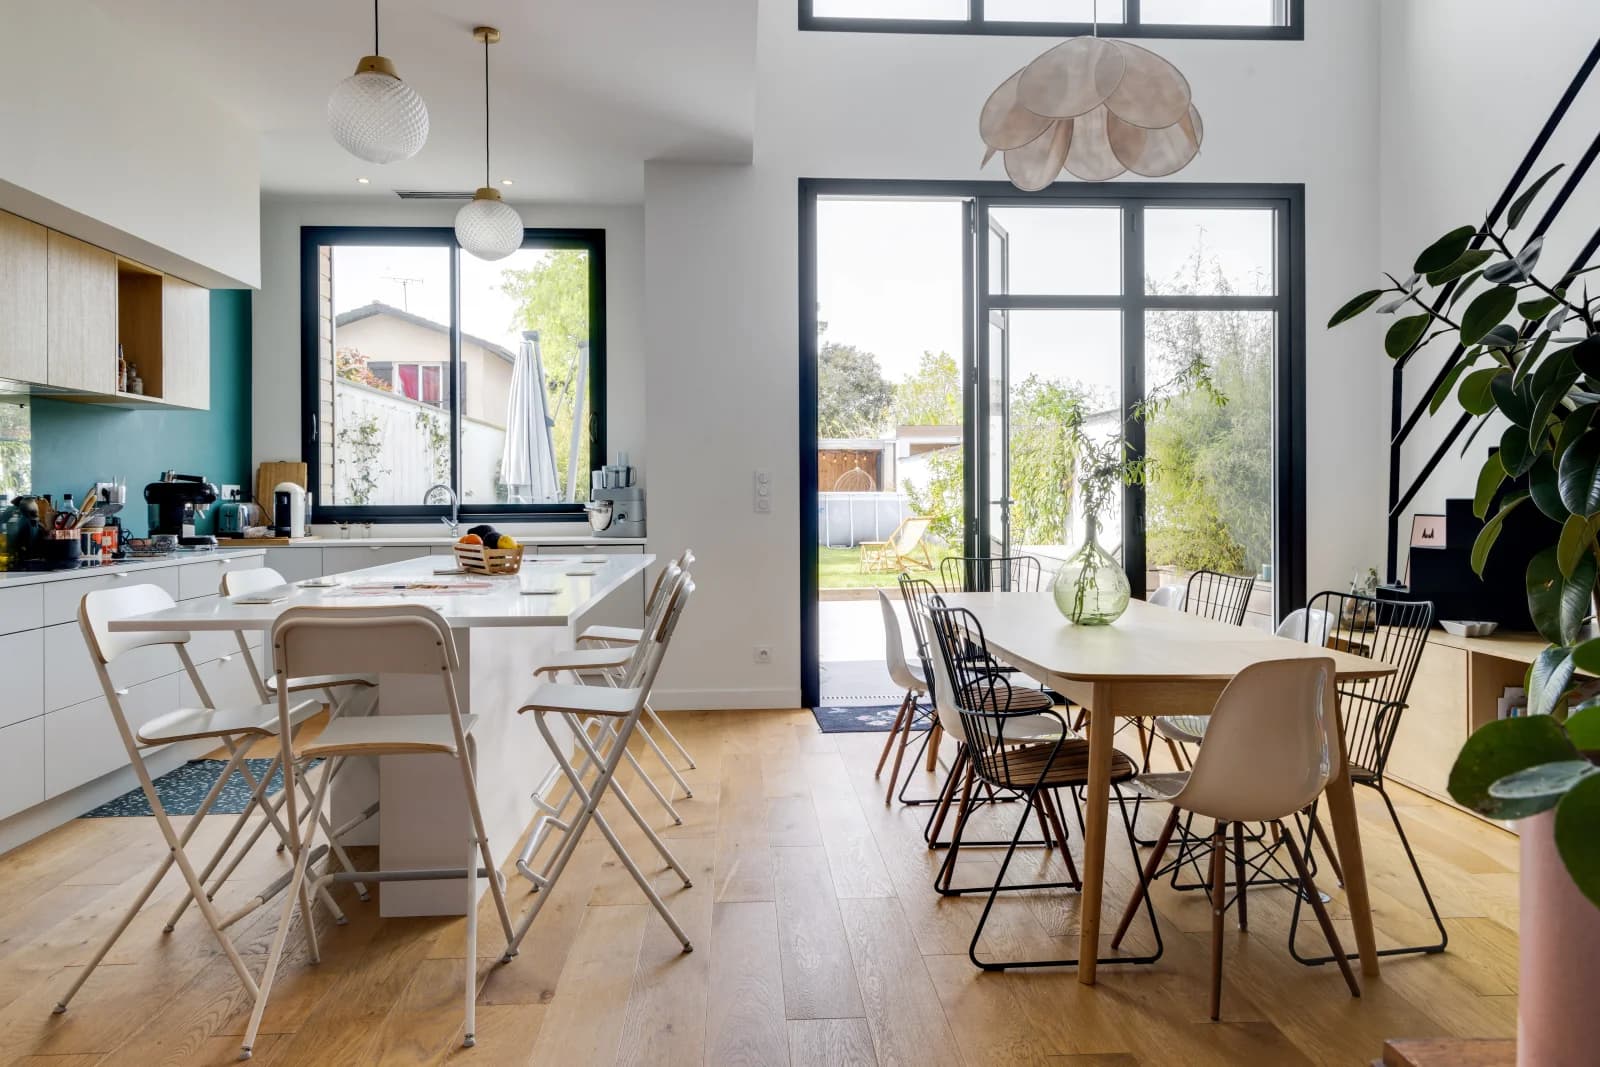 Comedor dentro Casa de cristal diseñada por un arquitecto con terraza y jardín - 3